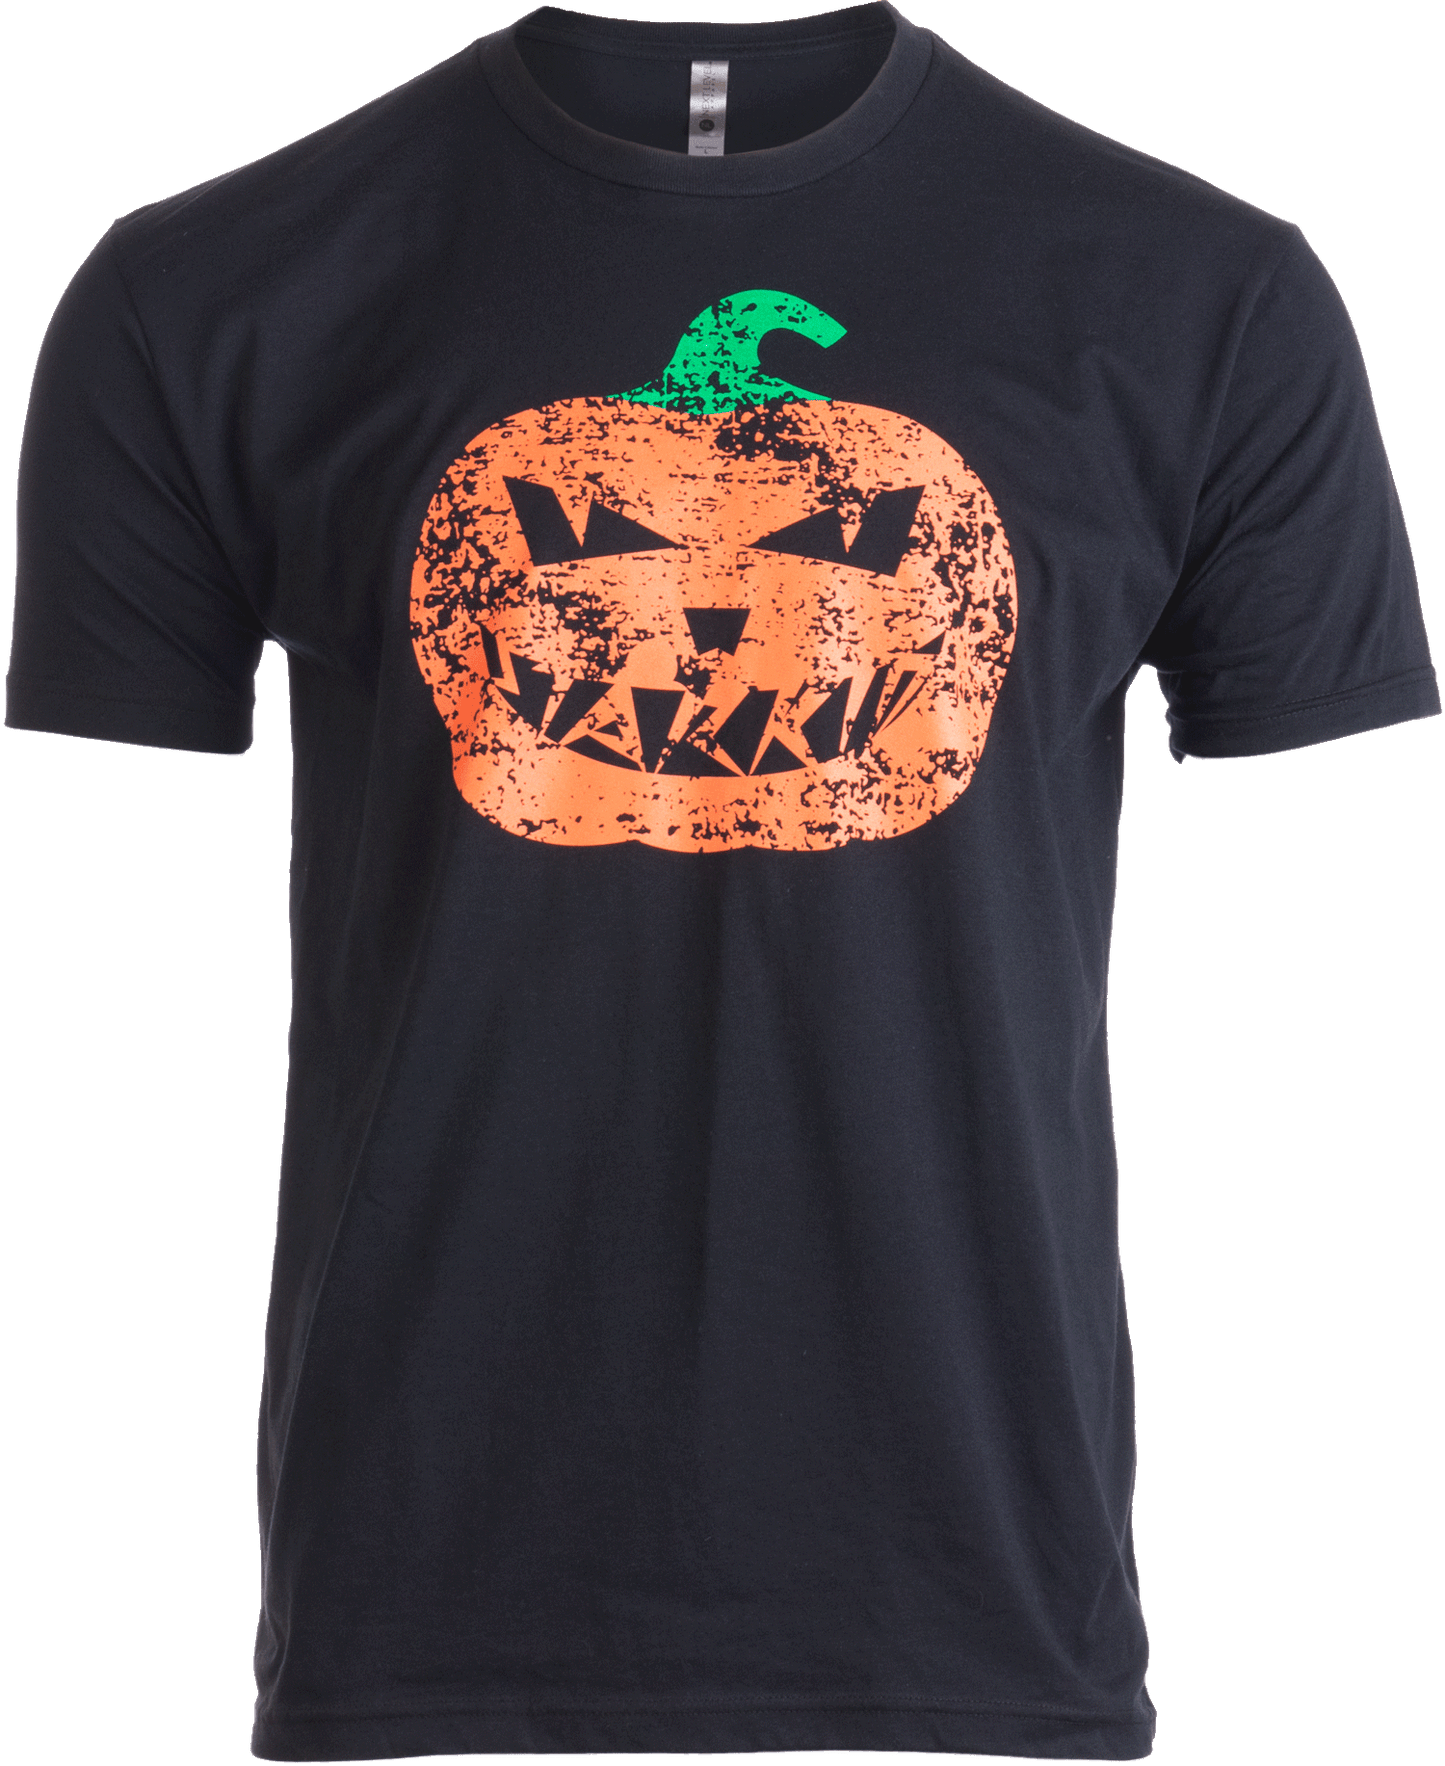 StarKid Halloween T-shirt